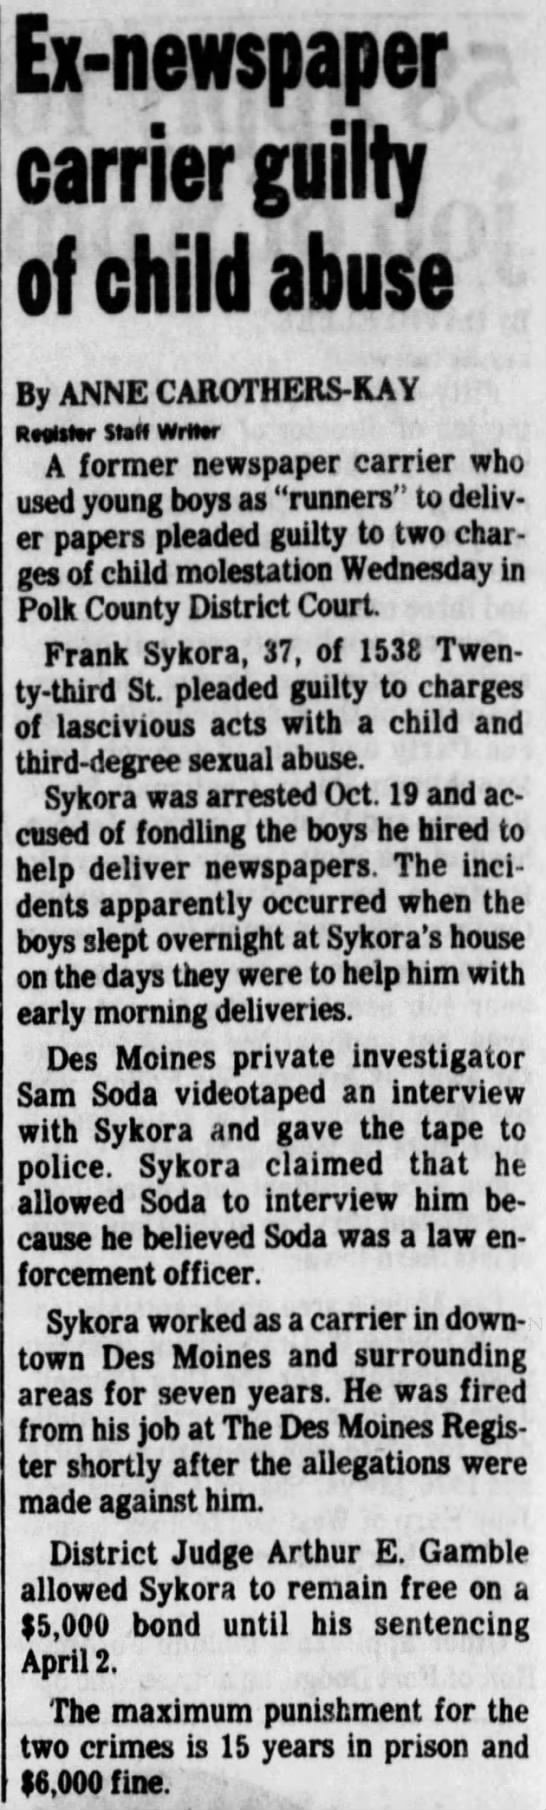 Frank Sykora guilty plea - 